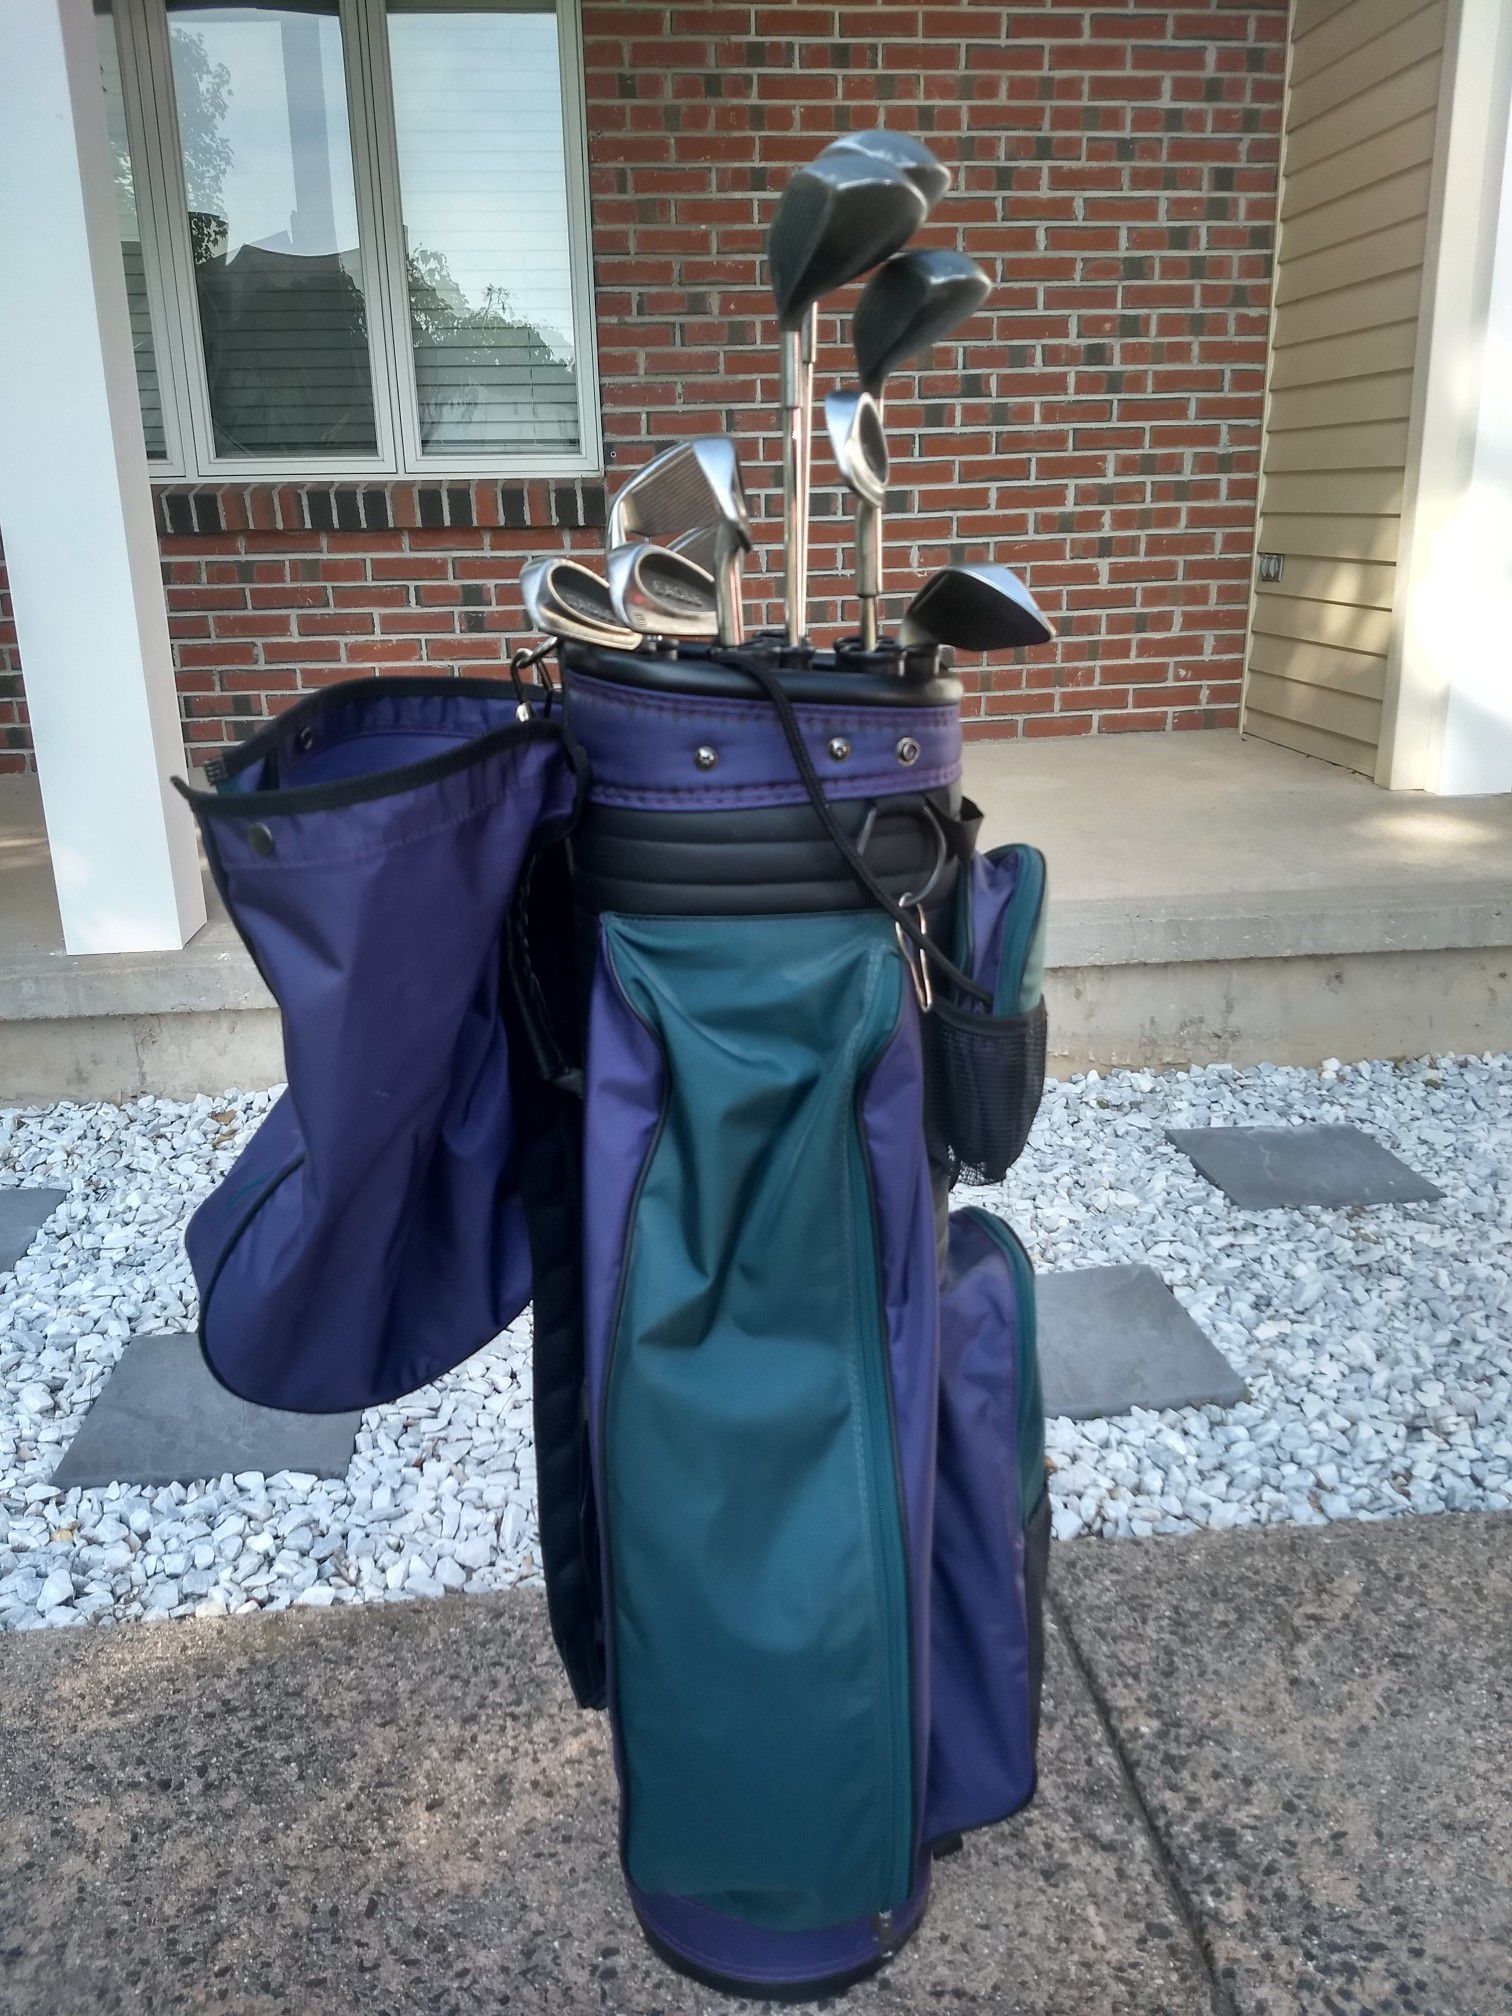 Ladies Spaulding golf clubs / Wilson bag